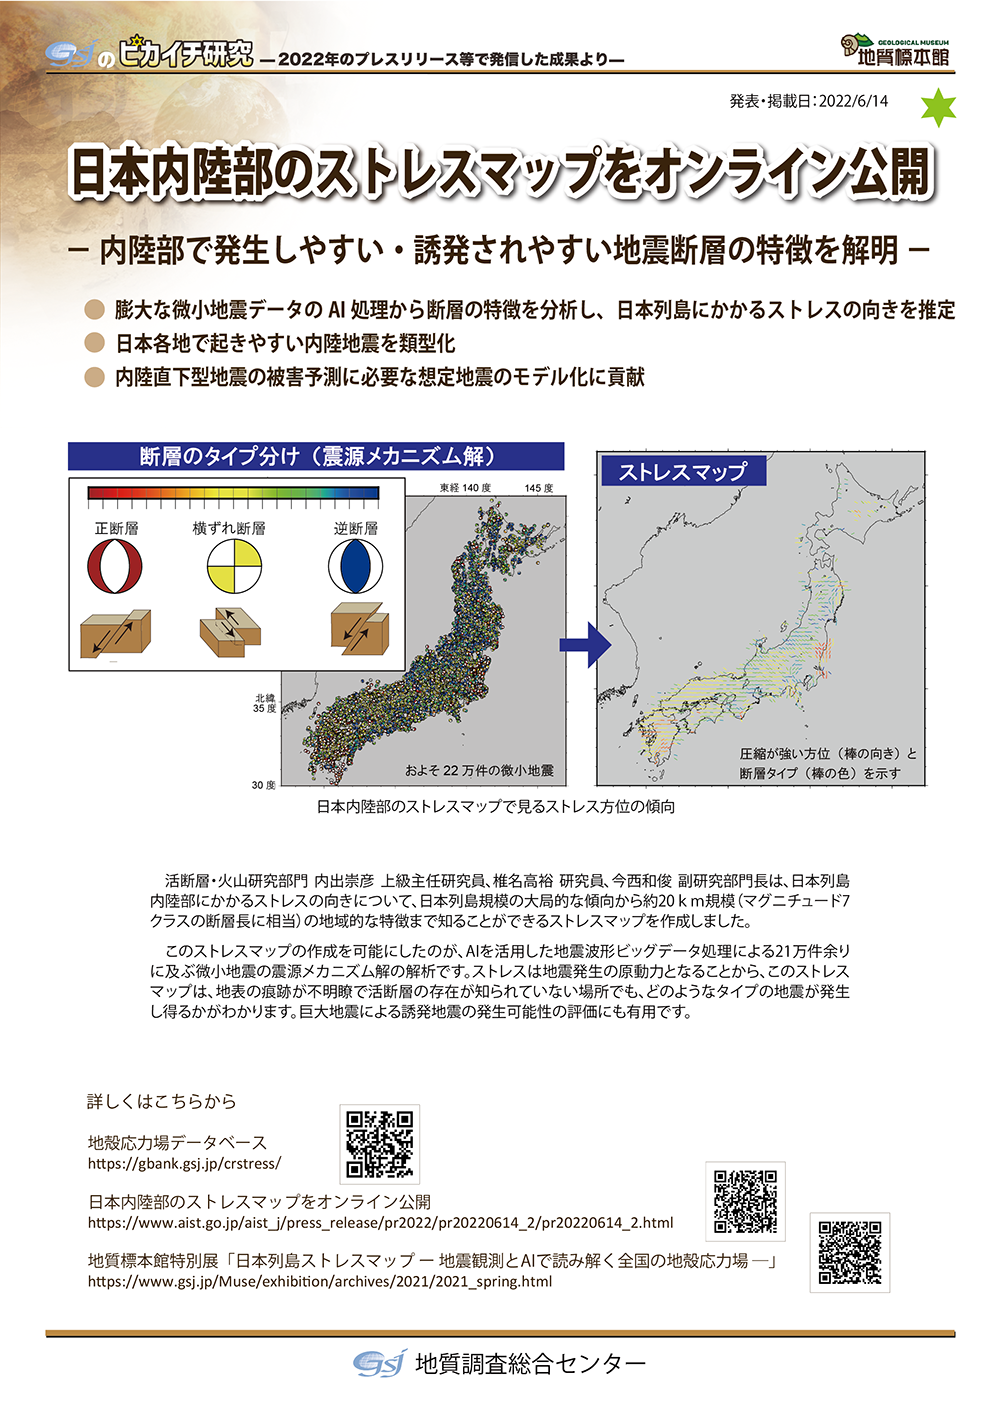 日本内陸部のストレスマップをオンライン公開　－内陸部で発生しやすい・誘発されやすい地震断層の特徴を解明－